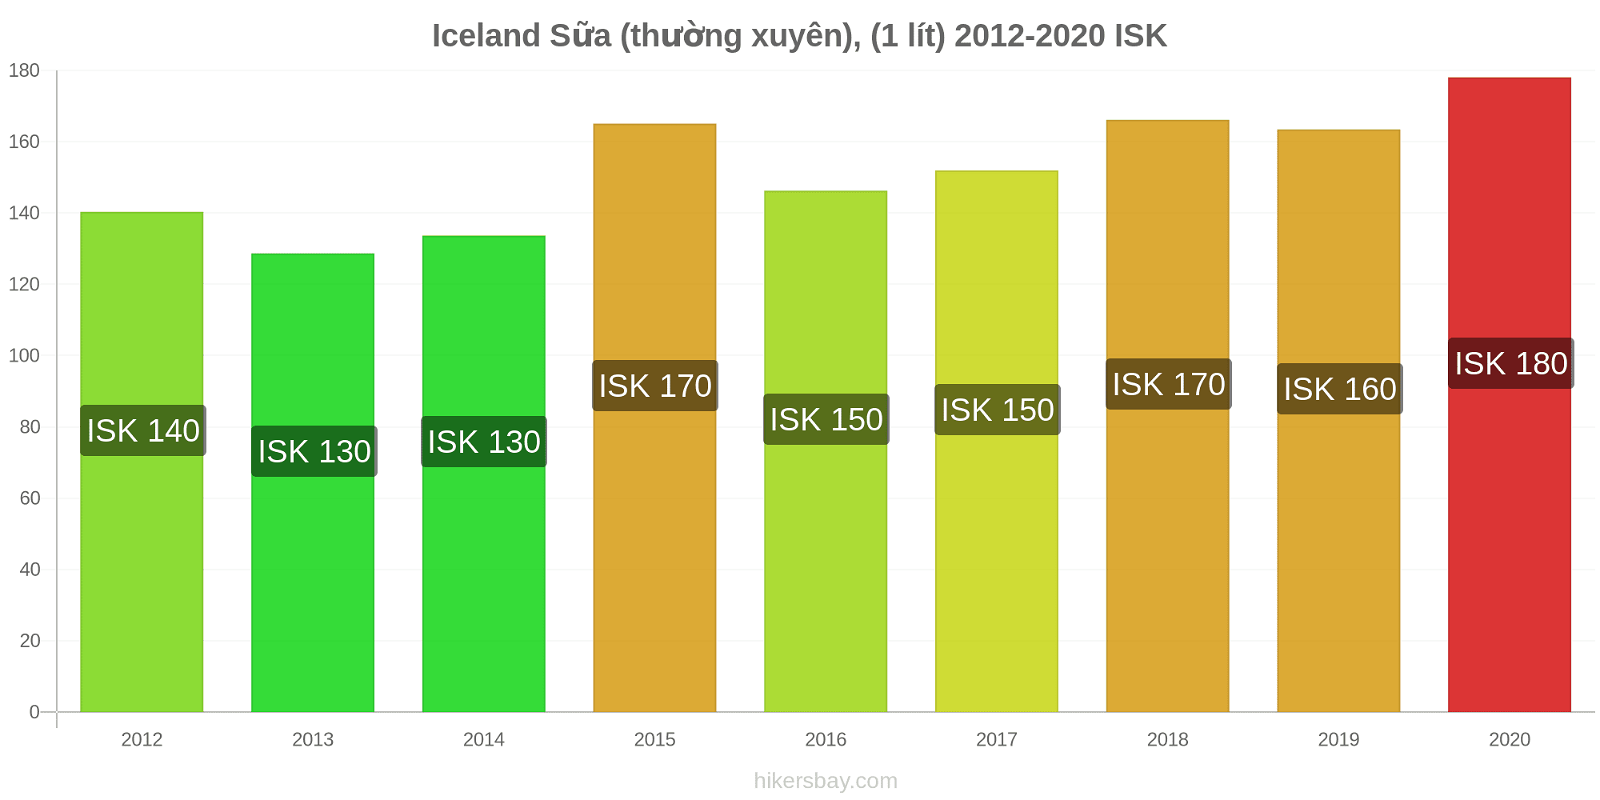 Iceland thay đổi giá Sữa (thường xuyên), (1 lít) hikersbay.com